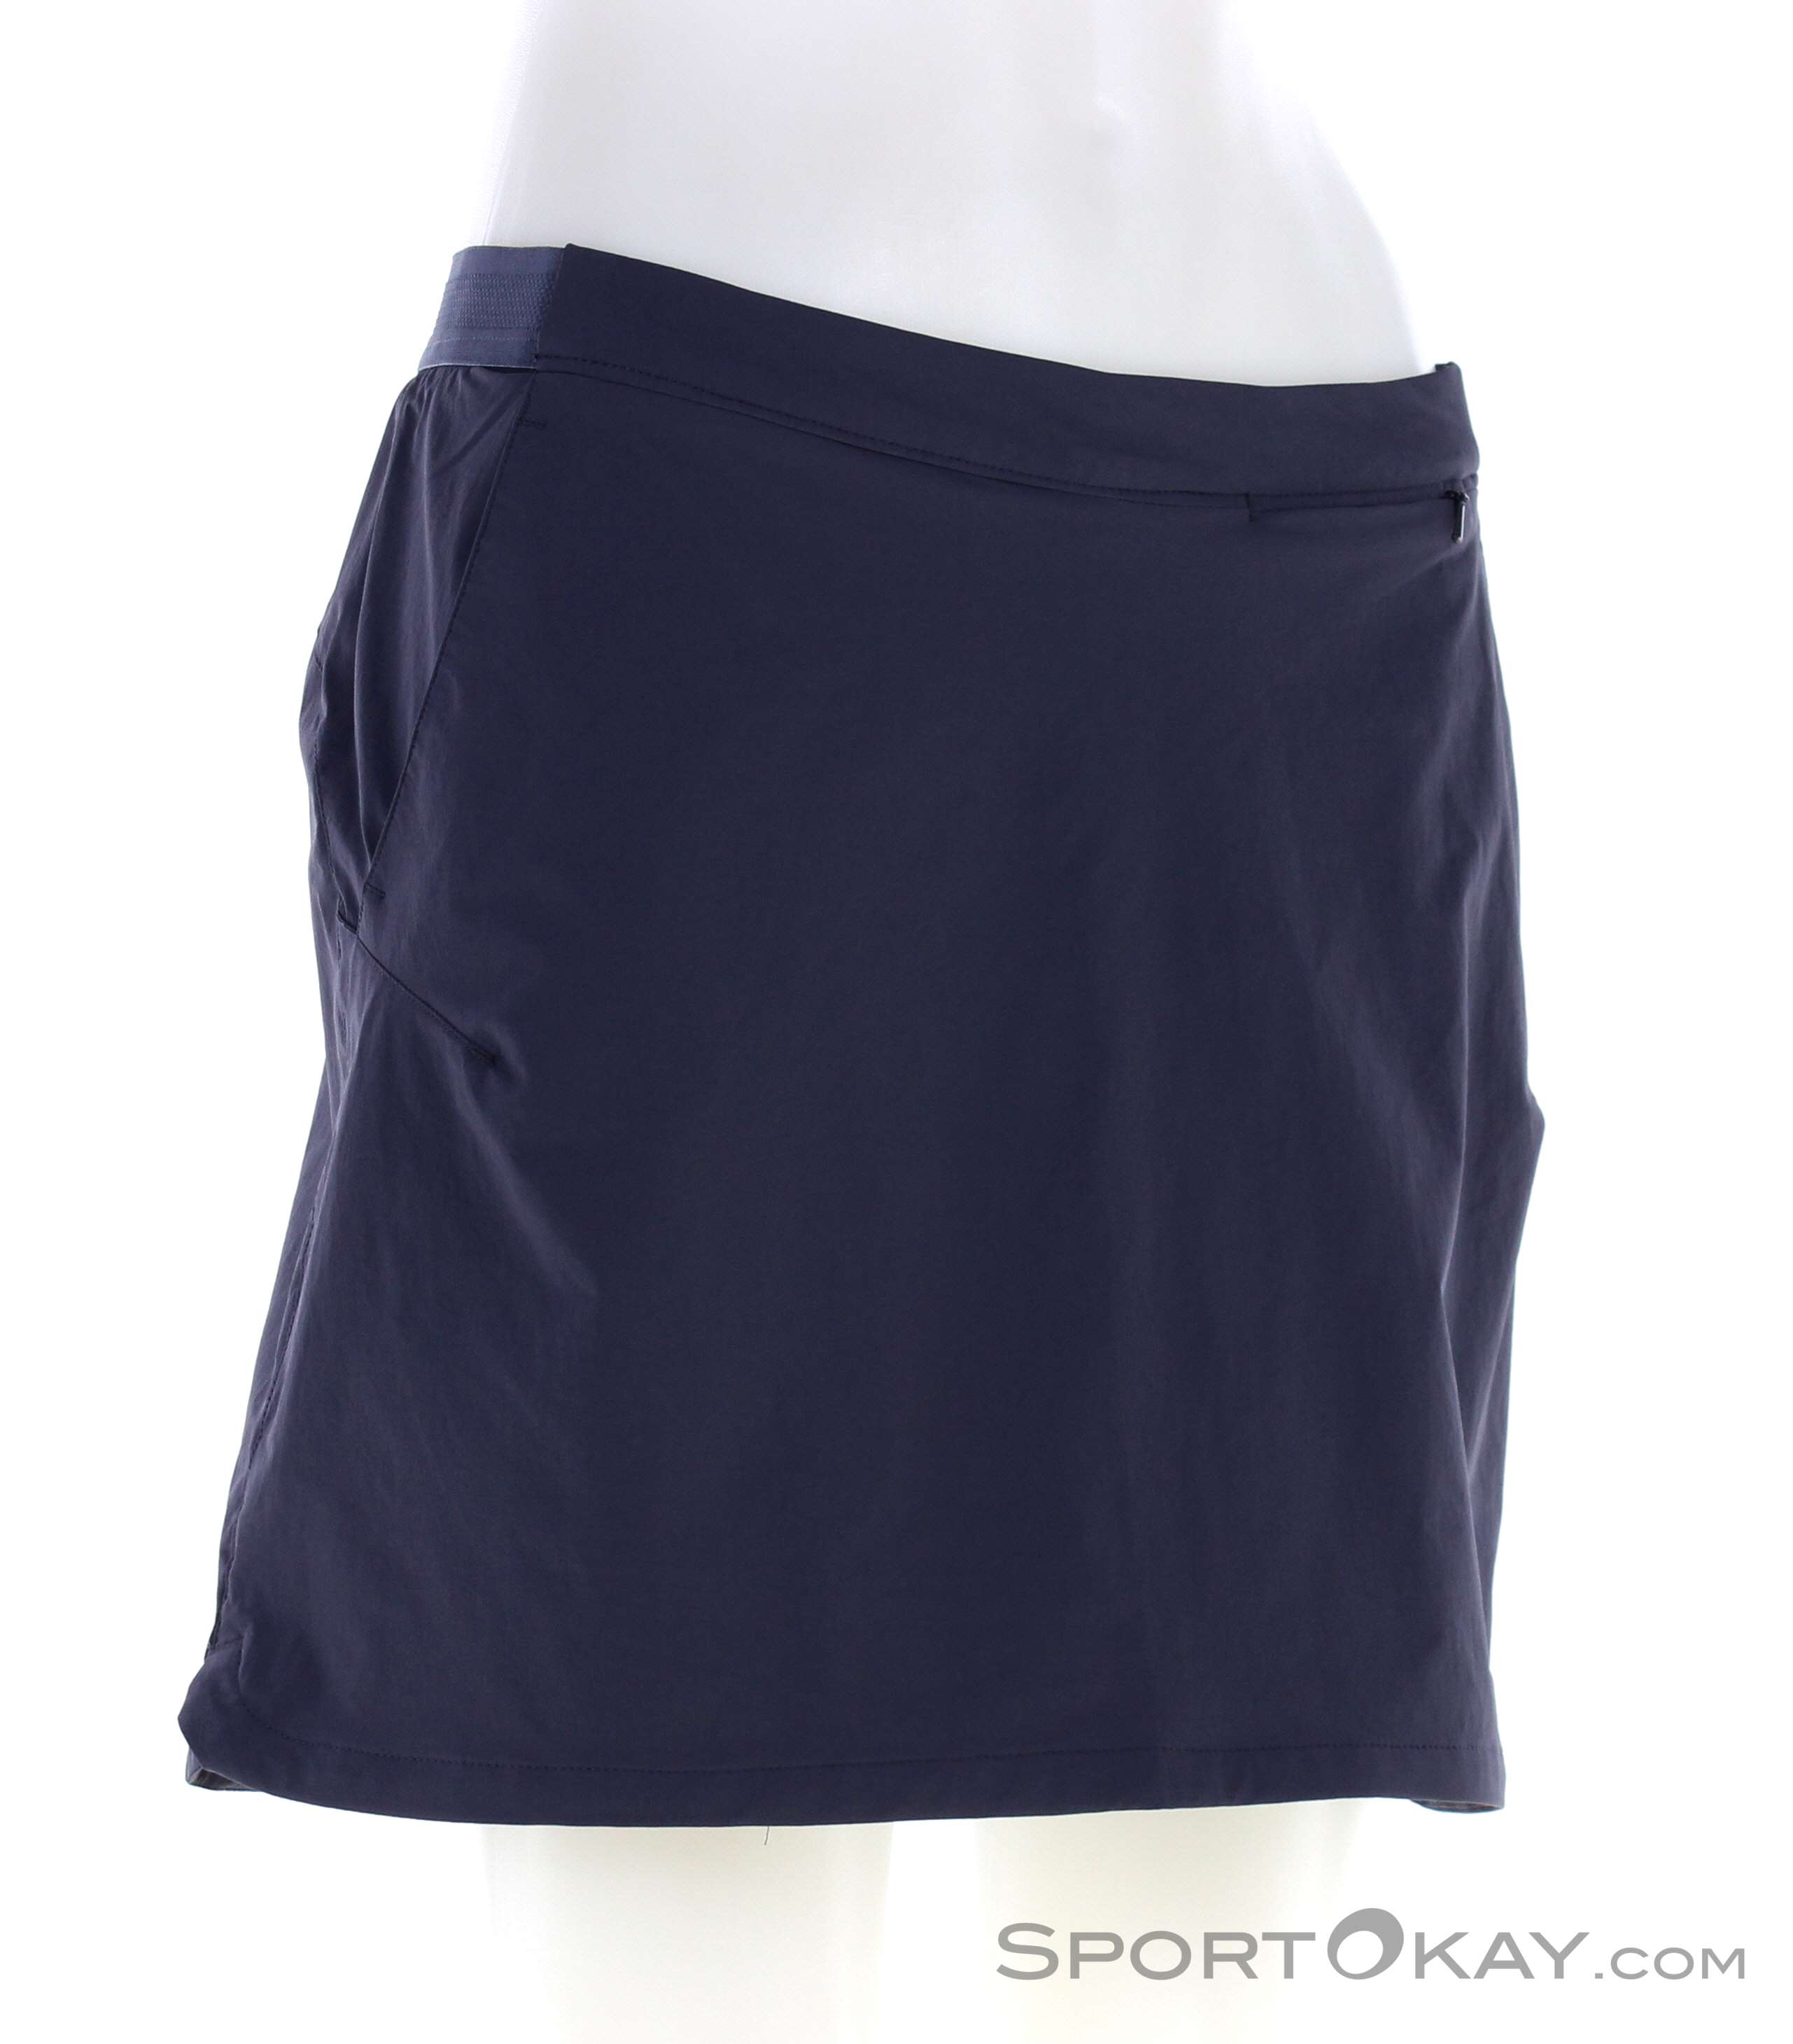 Jack Wolfskin Trail - Outdoor Pants Clothing Skirt Skort All Women - - - Outdoor Hilltop Outdoor